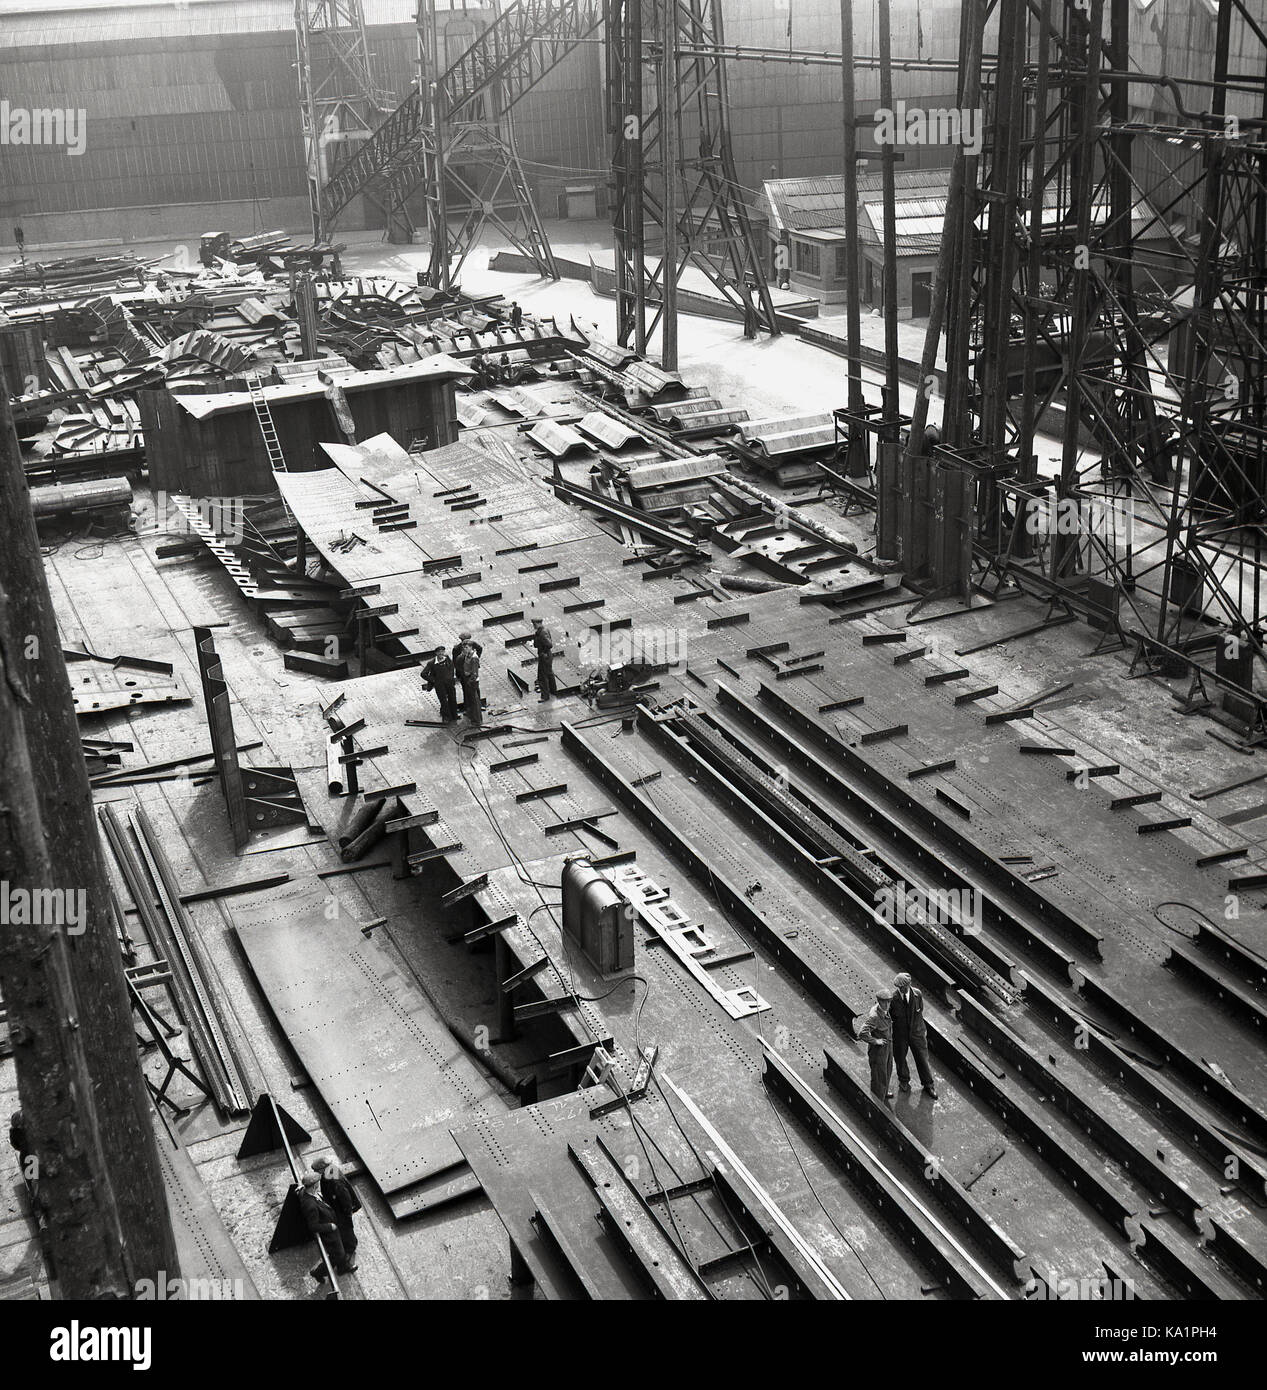 Début des années 1950, photo historique de J Allan Cash montrant des ouvriers sur le terrain, éclipsé par les gantries géantes du chantier naval de Harland & Wolff sur les quais de Belfast, en Irlande du Nord, célèbre pour le site où le Titantic Ocean Liner a été construit. Banque D'Images